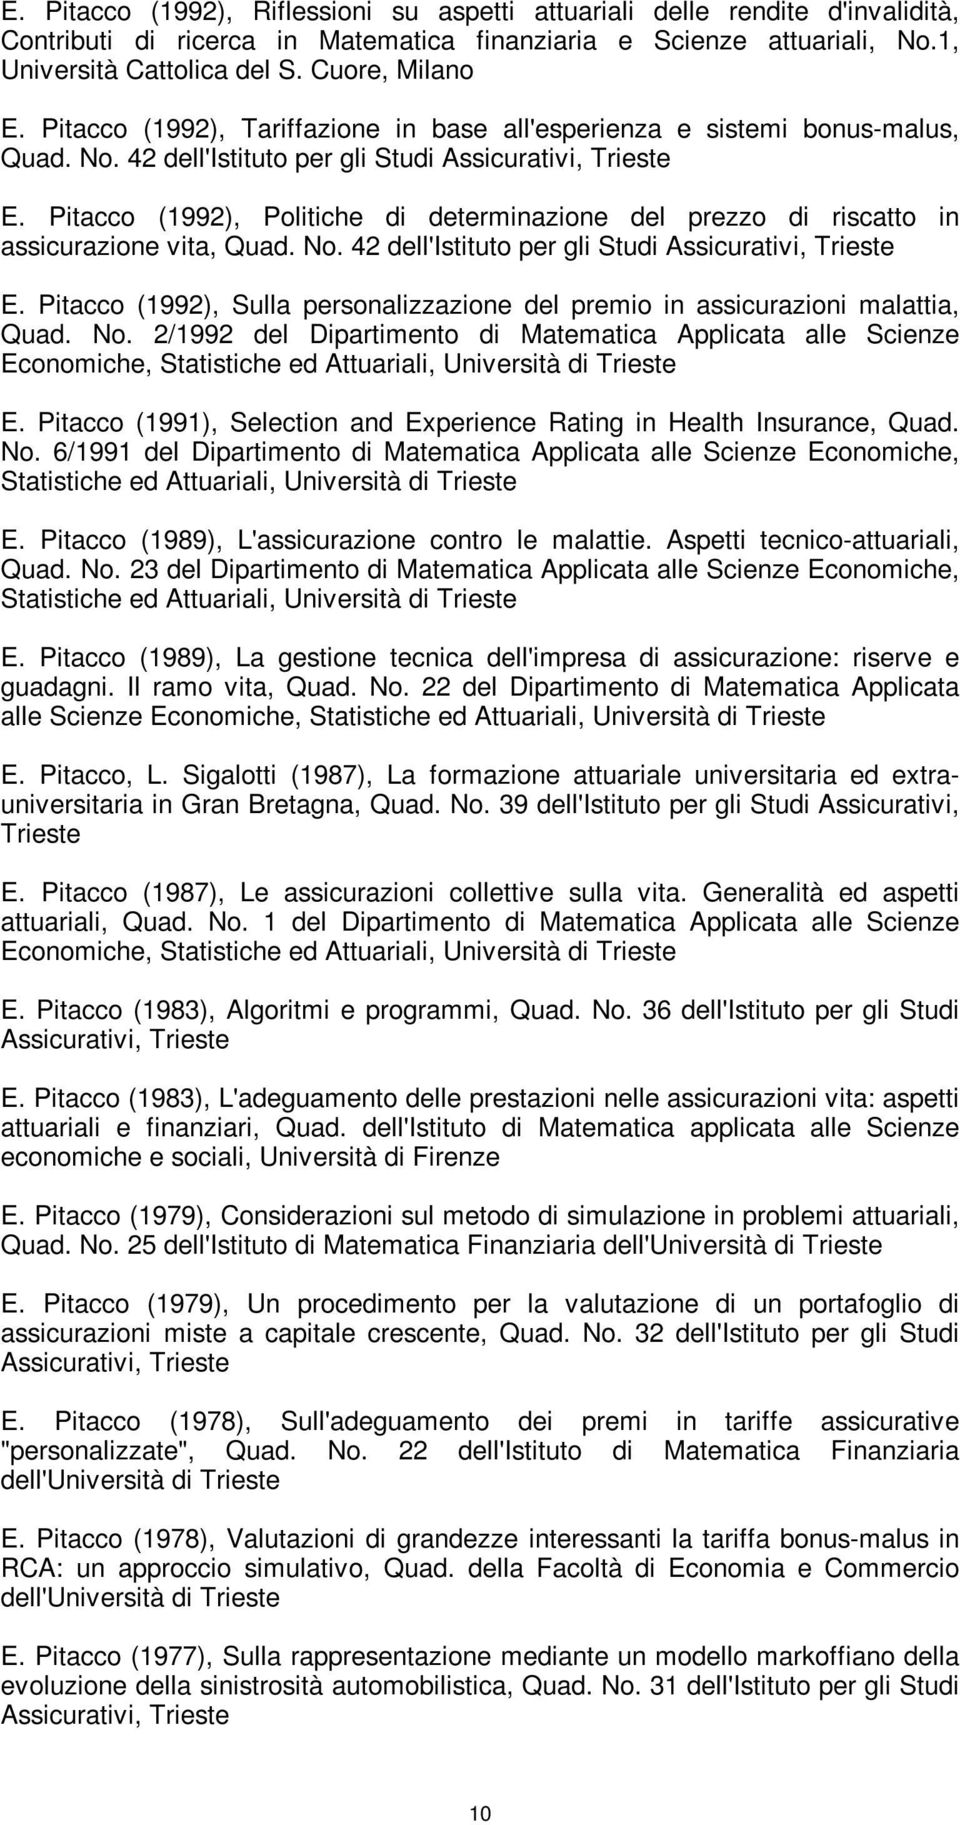 Pitacco (1992), Politiche di determinazione del prezzo di riscatto in assicurazione vita, Quad. No. 42 dell'istituto per gli Studi Assicurativi, Trieste E.